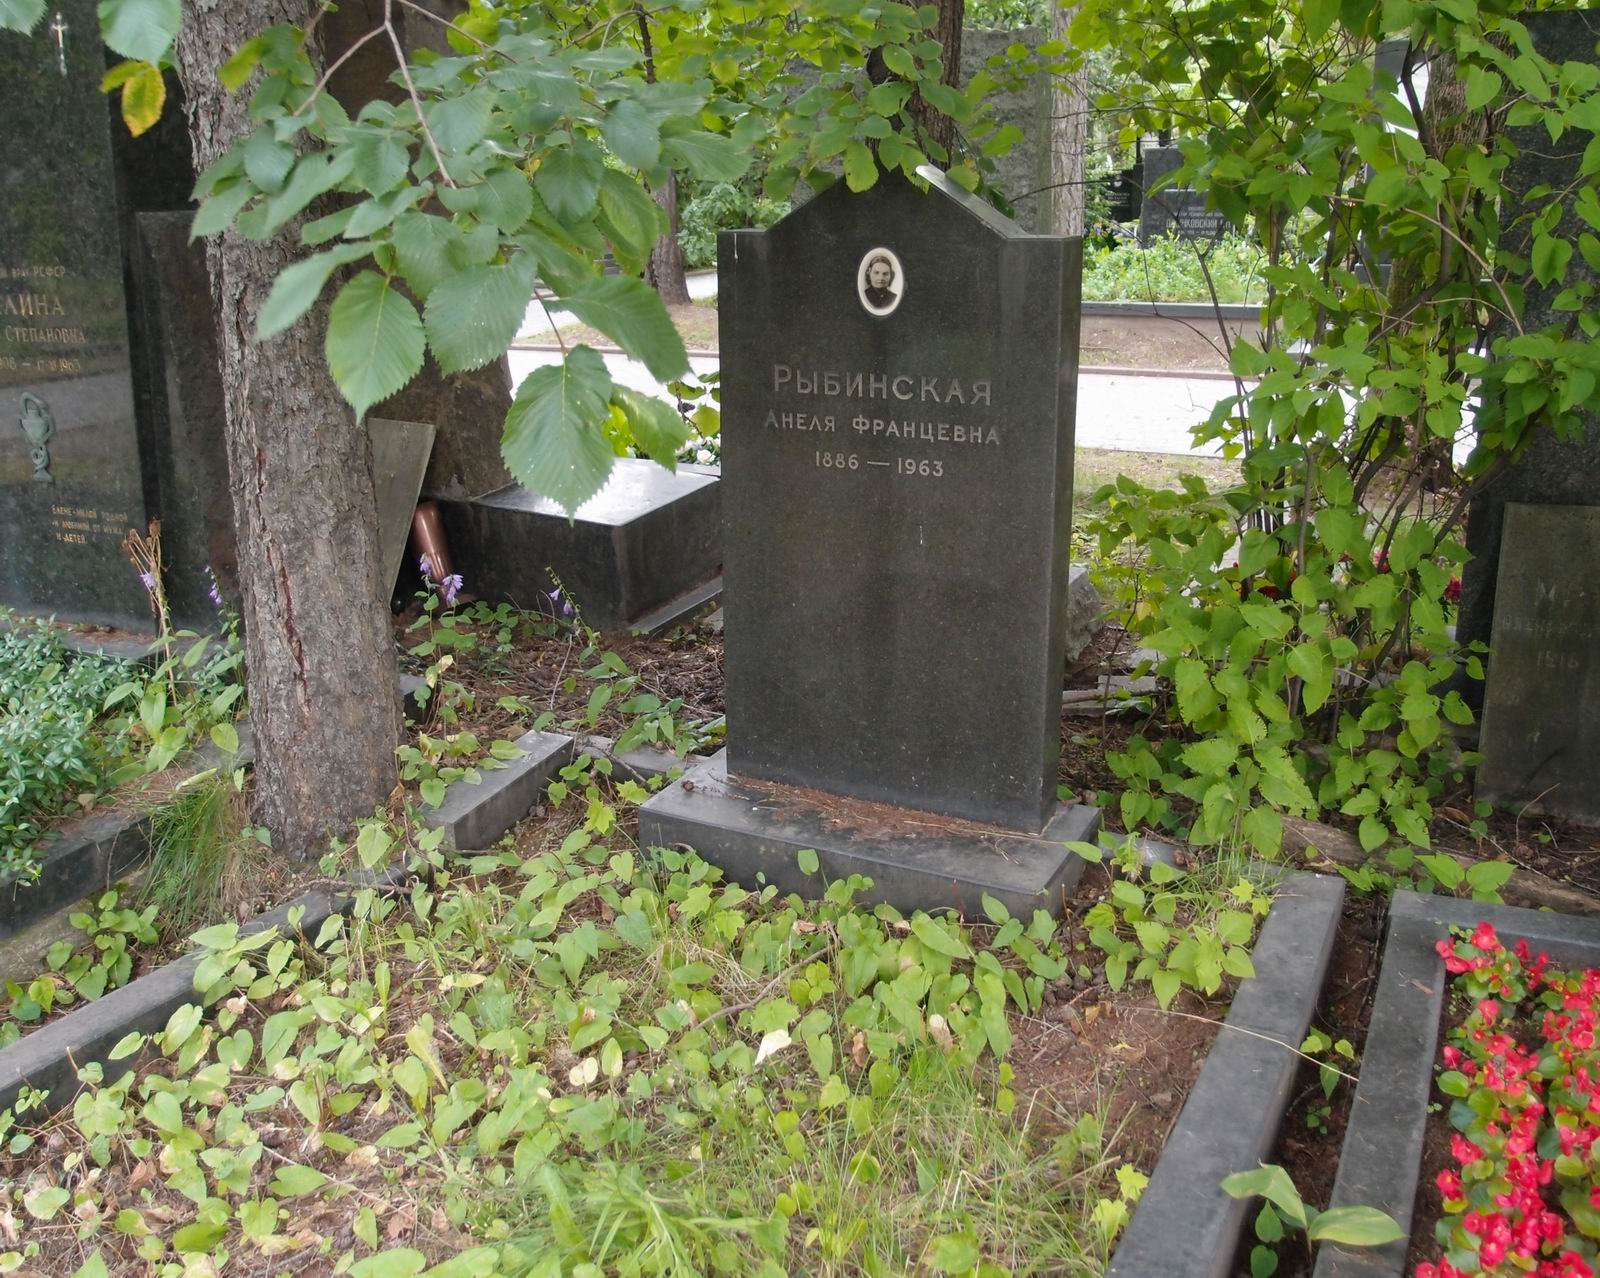 Памятник на могиле Рыбинской А.Ф. (1886-1963), на Новодевичьем кладбище (8-38-4).